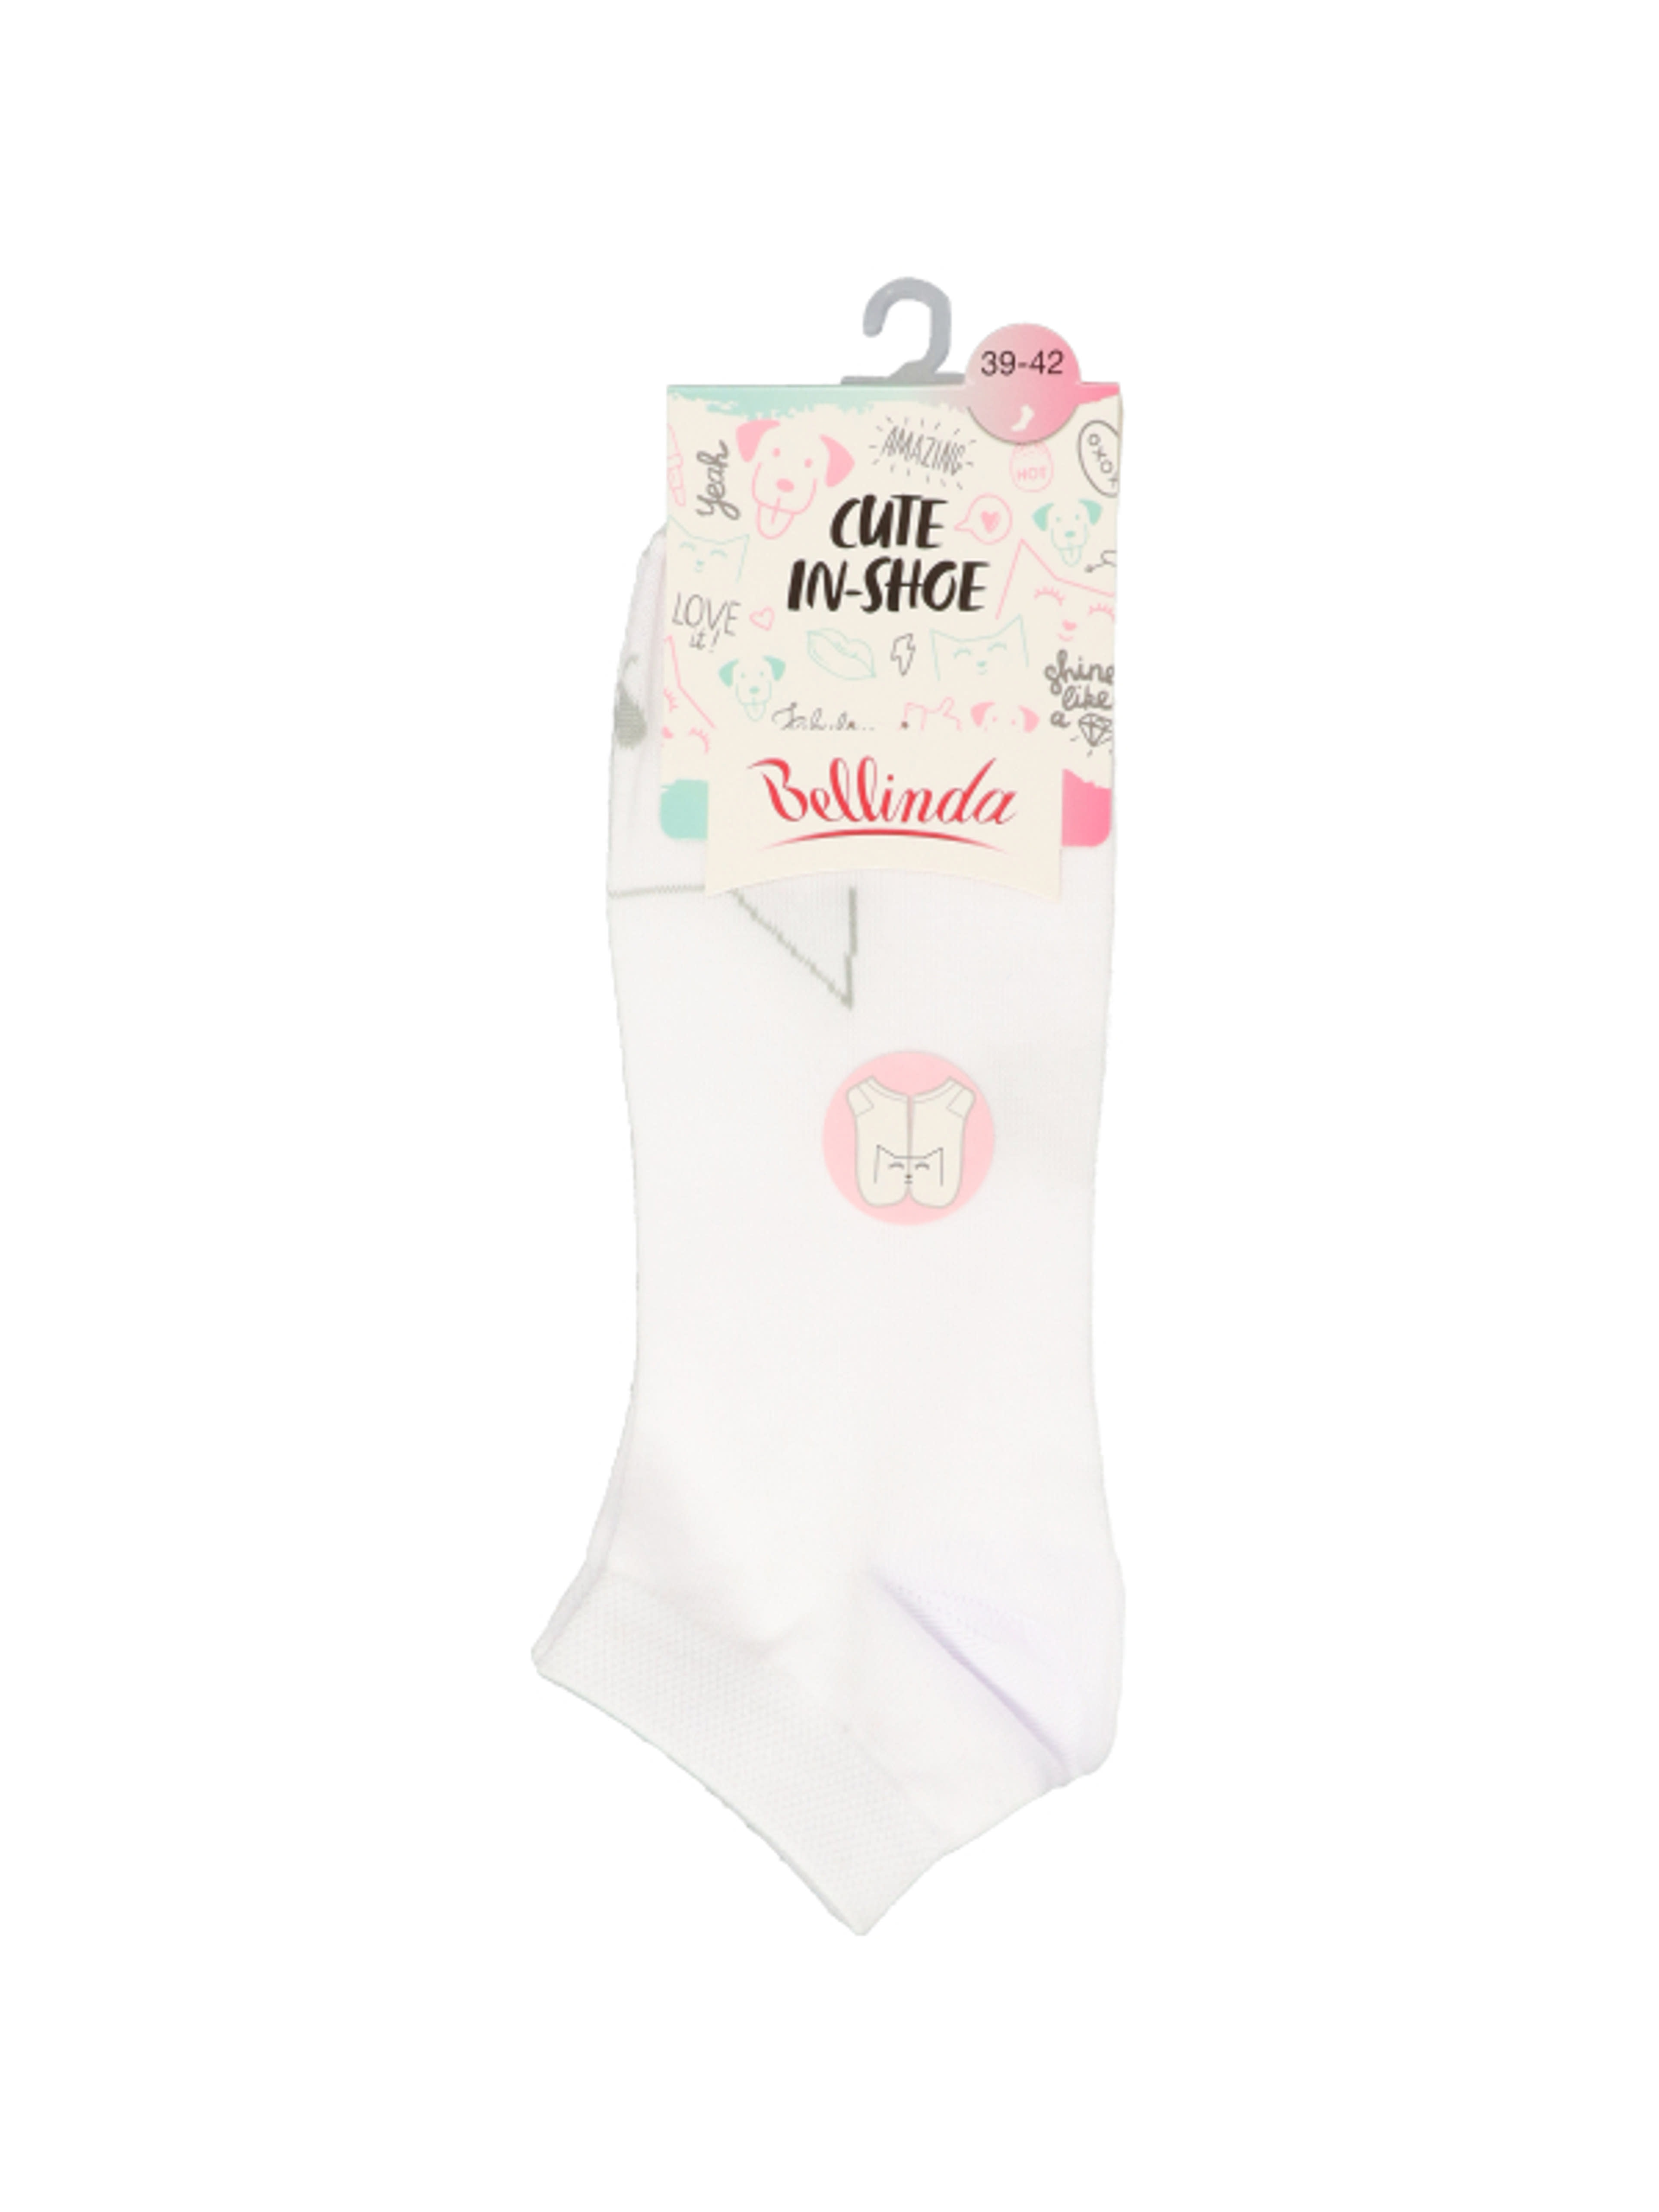 Bellinda Cute In-Shoe zokni, fehér 39-42 - 1 db